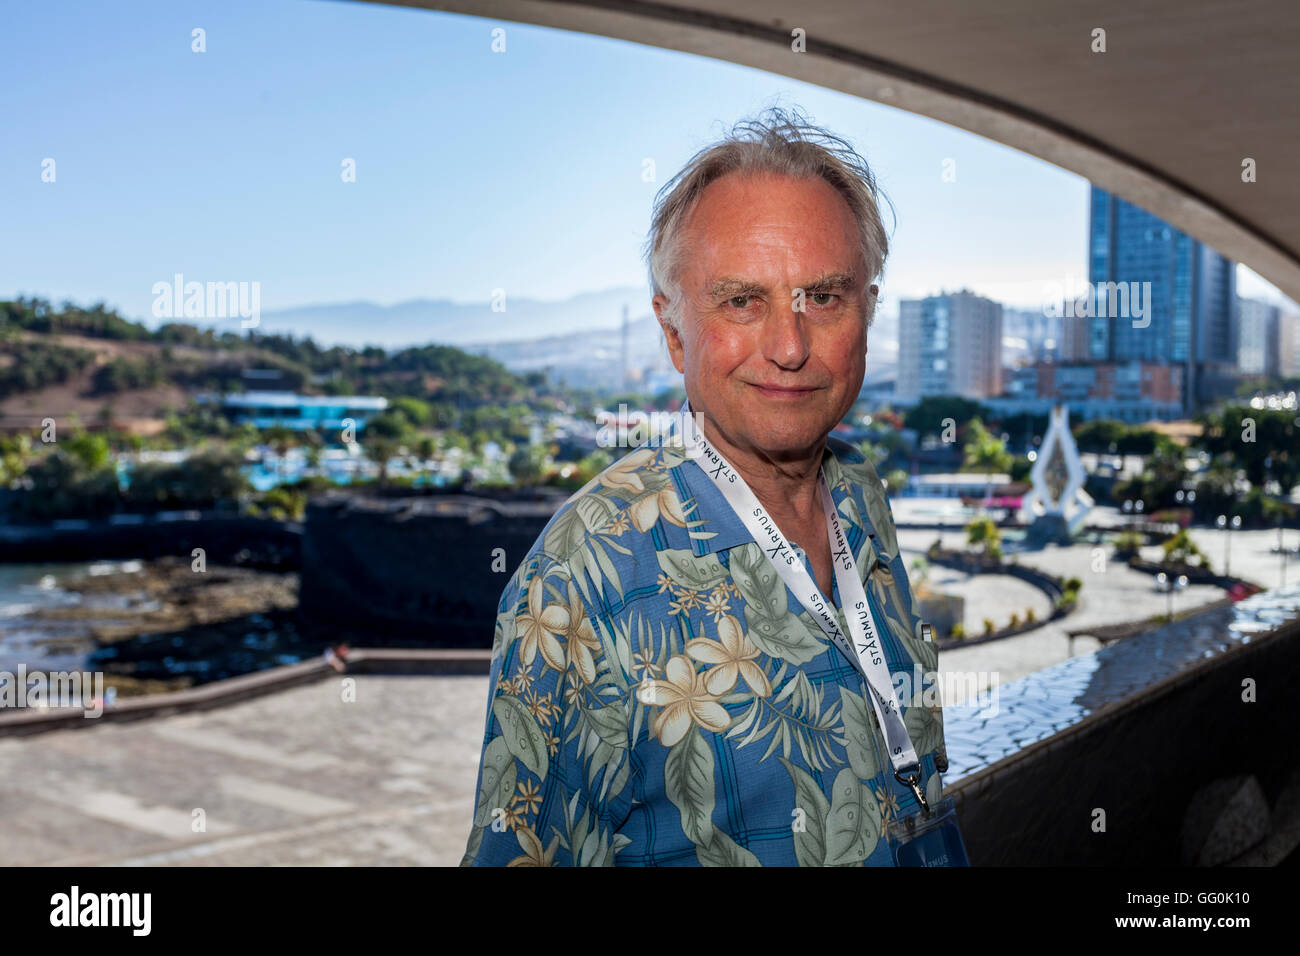 Clinton Richard Dawkins FRS FRSL à Starmus Festival, Tenerife. Il est un éthologue, biologie évolutive et auteur. Banque D'Images